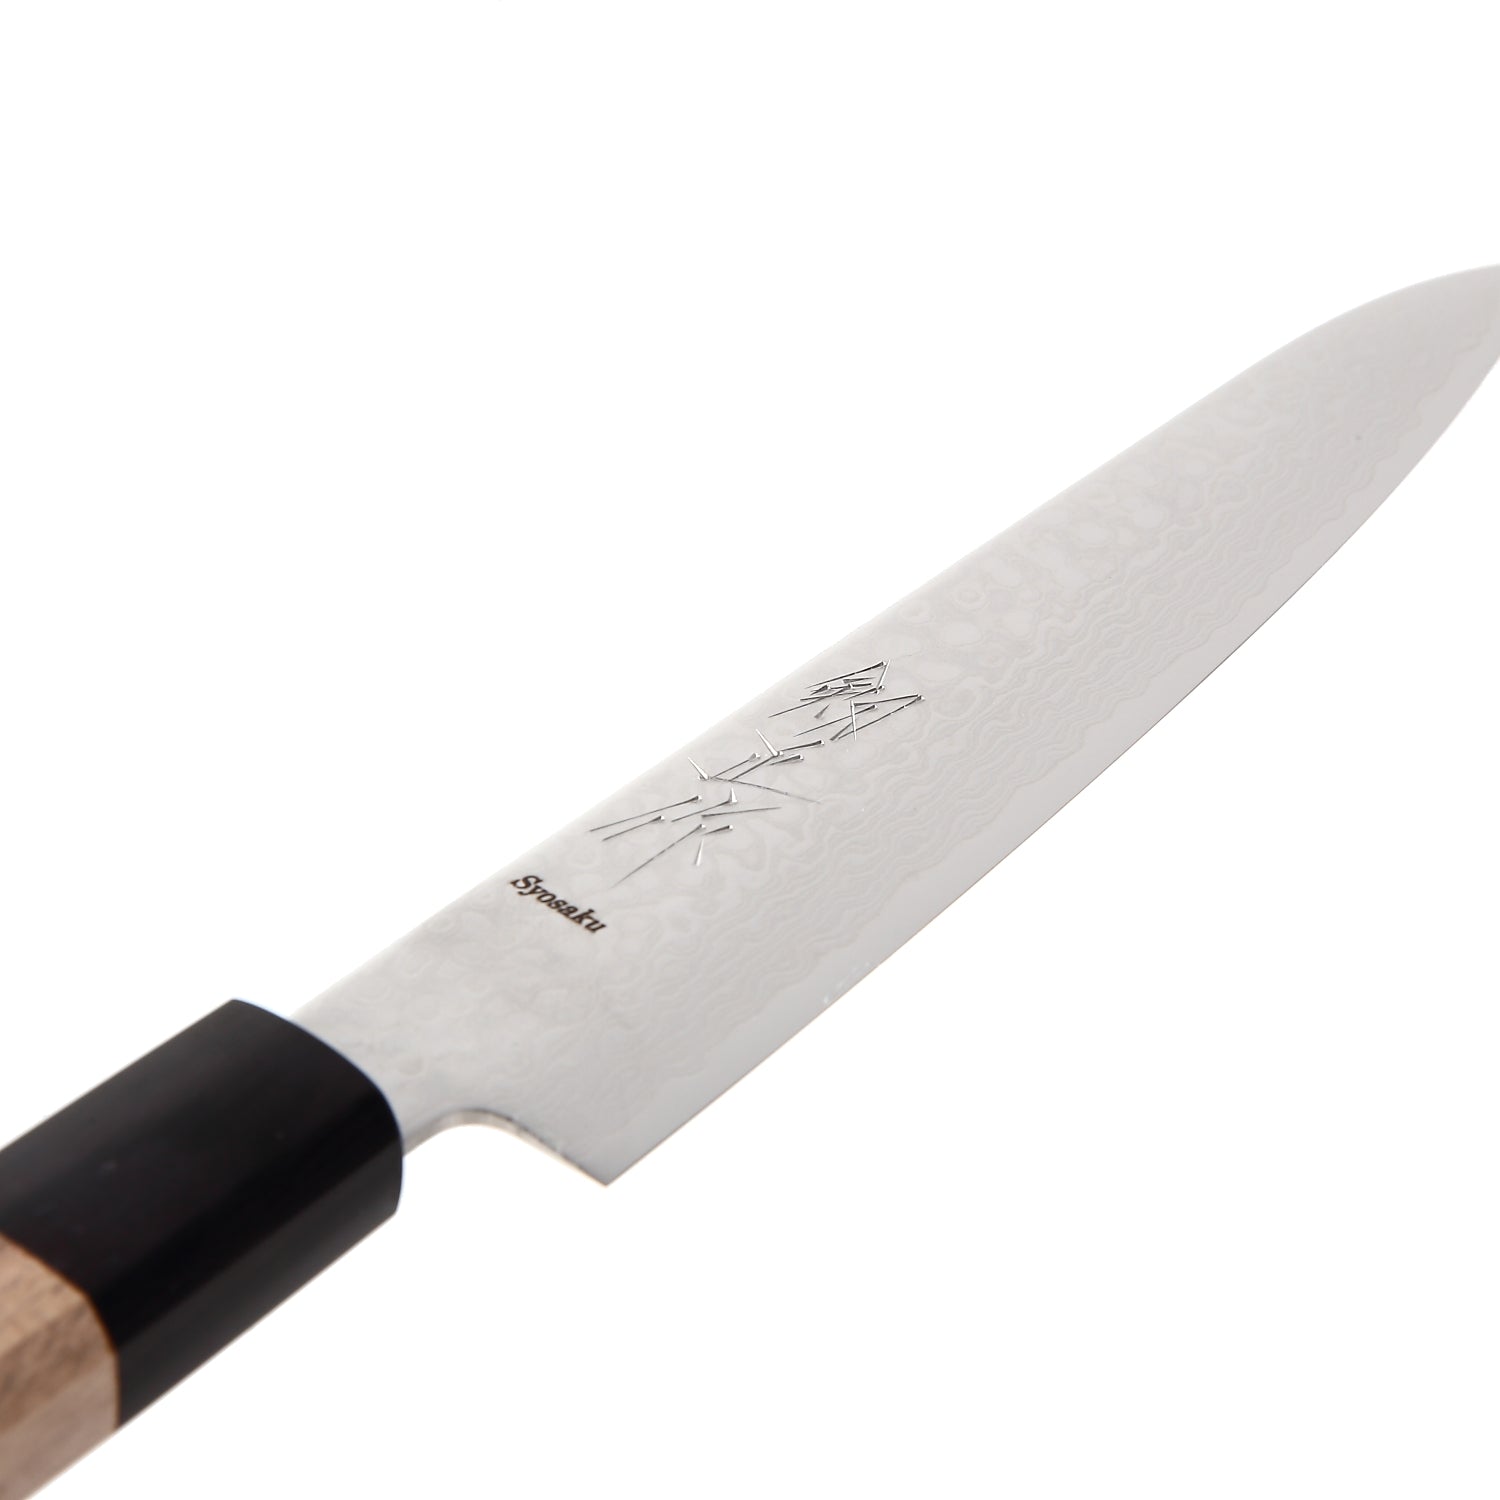 Syosaku Japanese Petty Knife Damascus ZA18 69 Layer Octagonal Walnut Handle, 6-Inch (150mm)